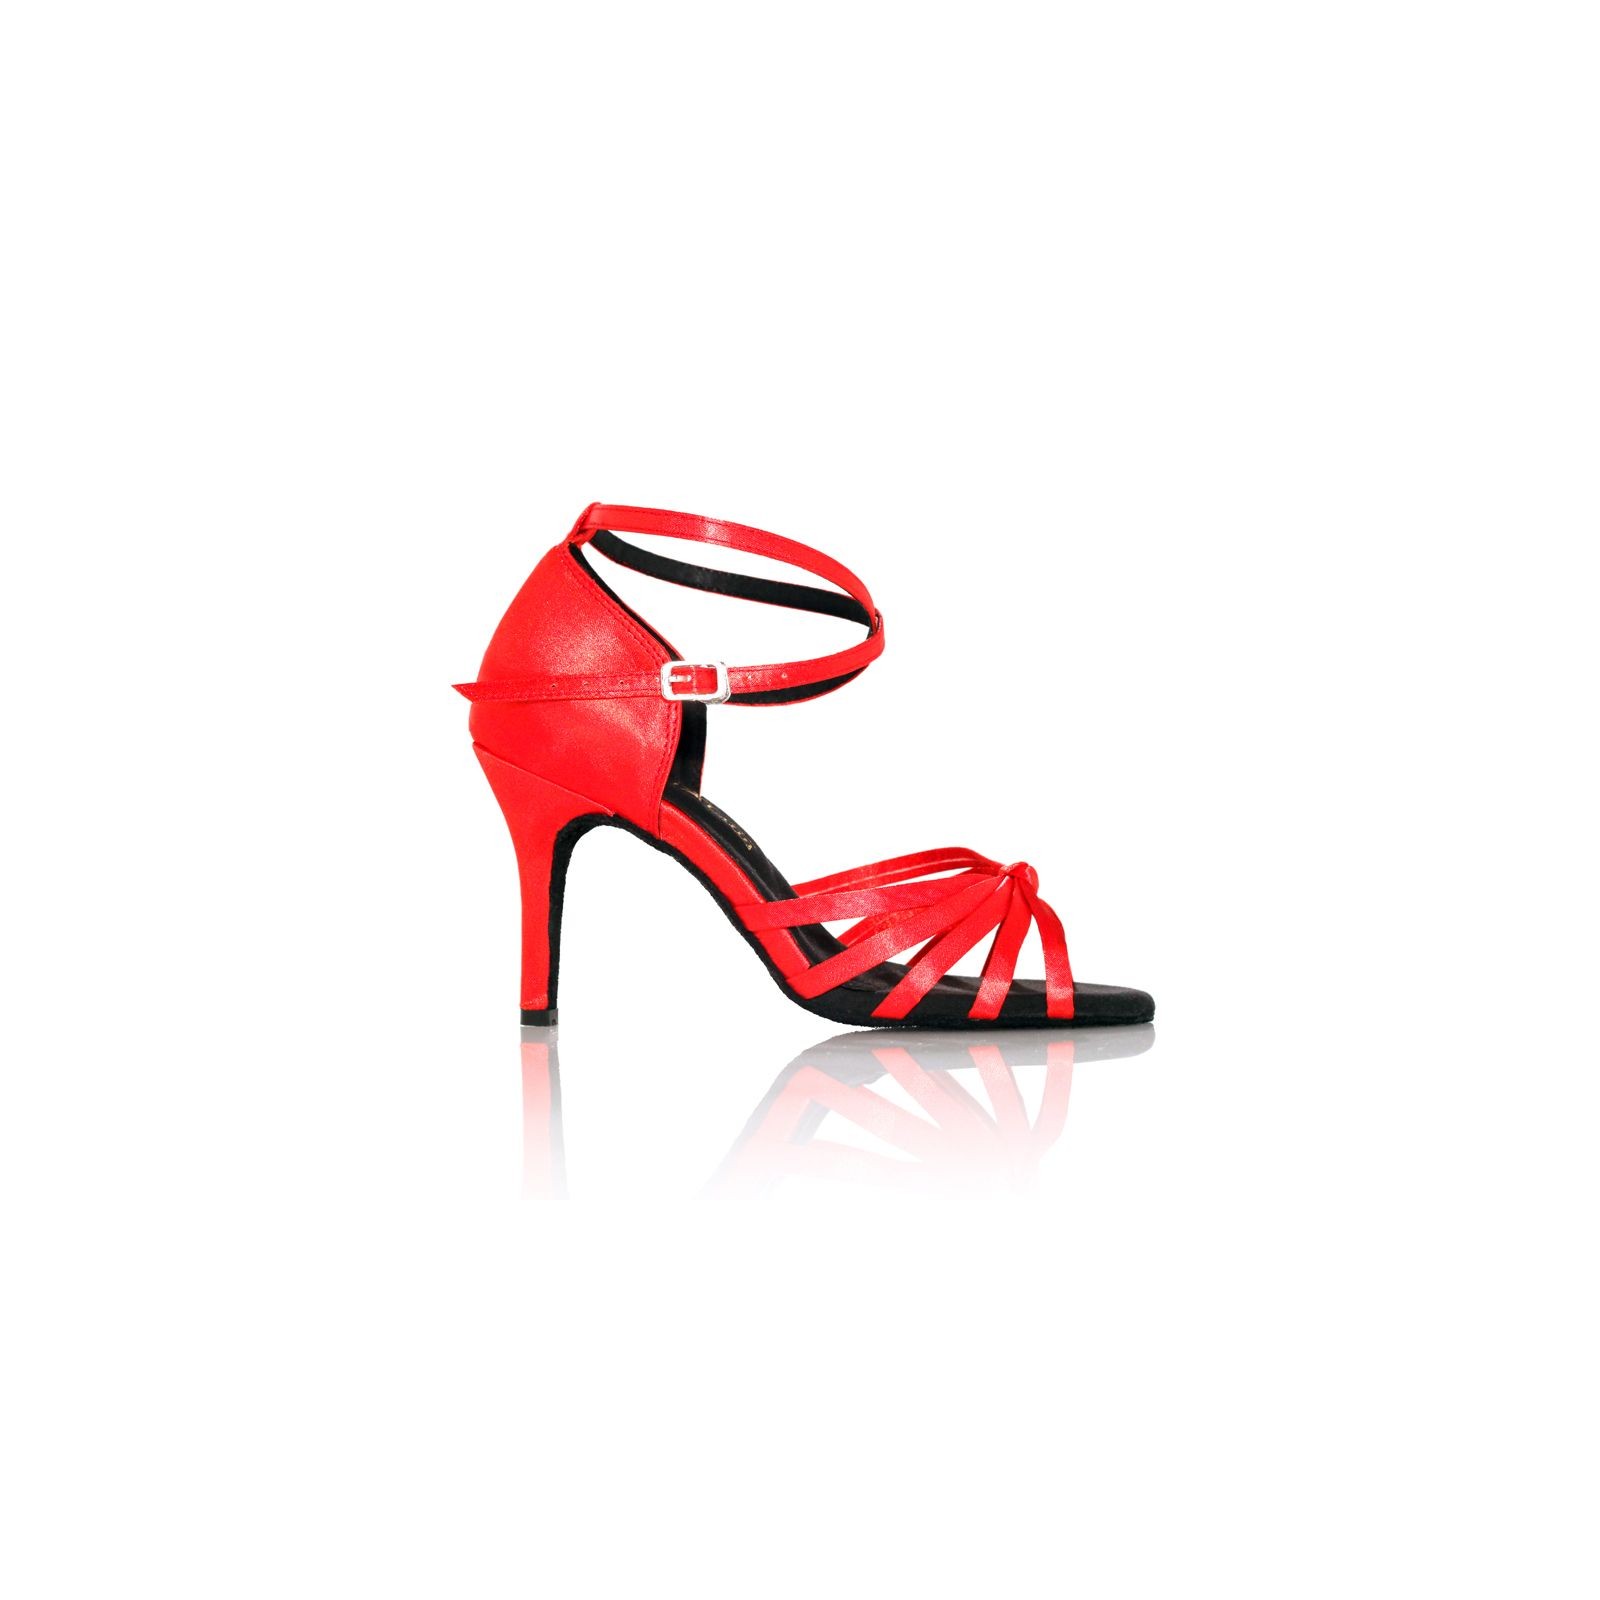 HXYOO Chaussures de Danse de Salon dintérieur pour Les Femmes Slasa Latine WK010